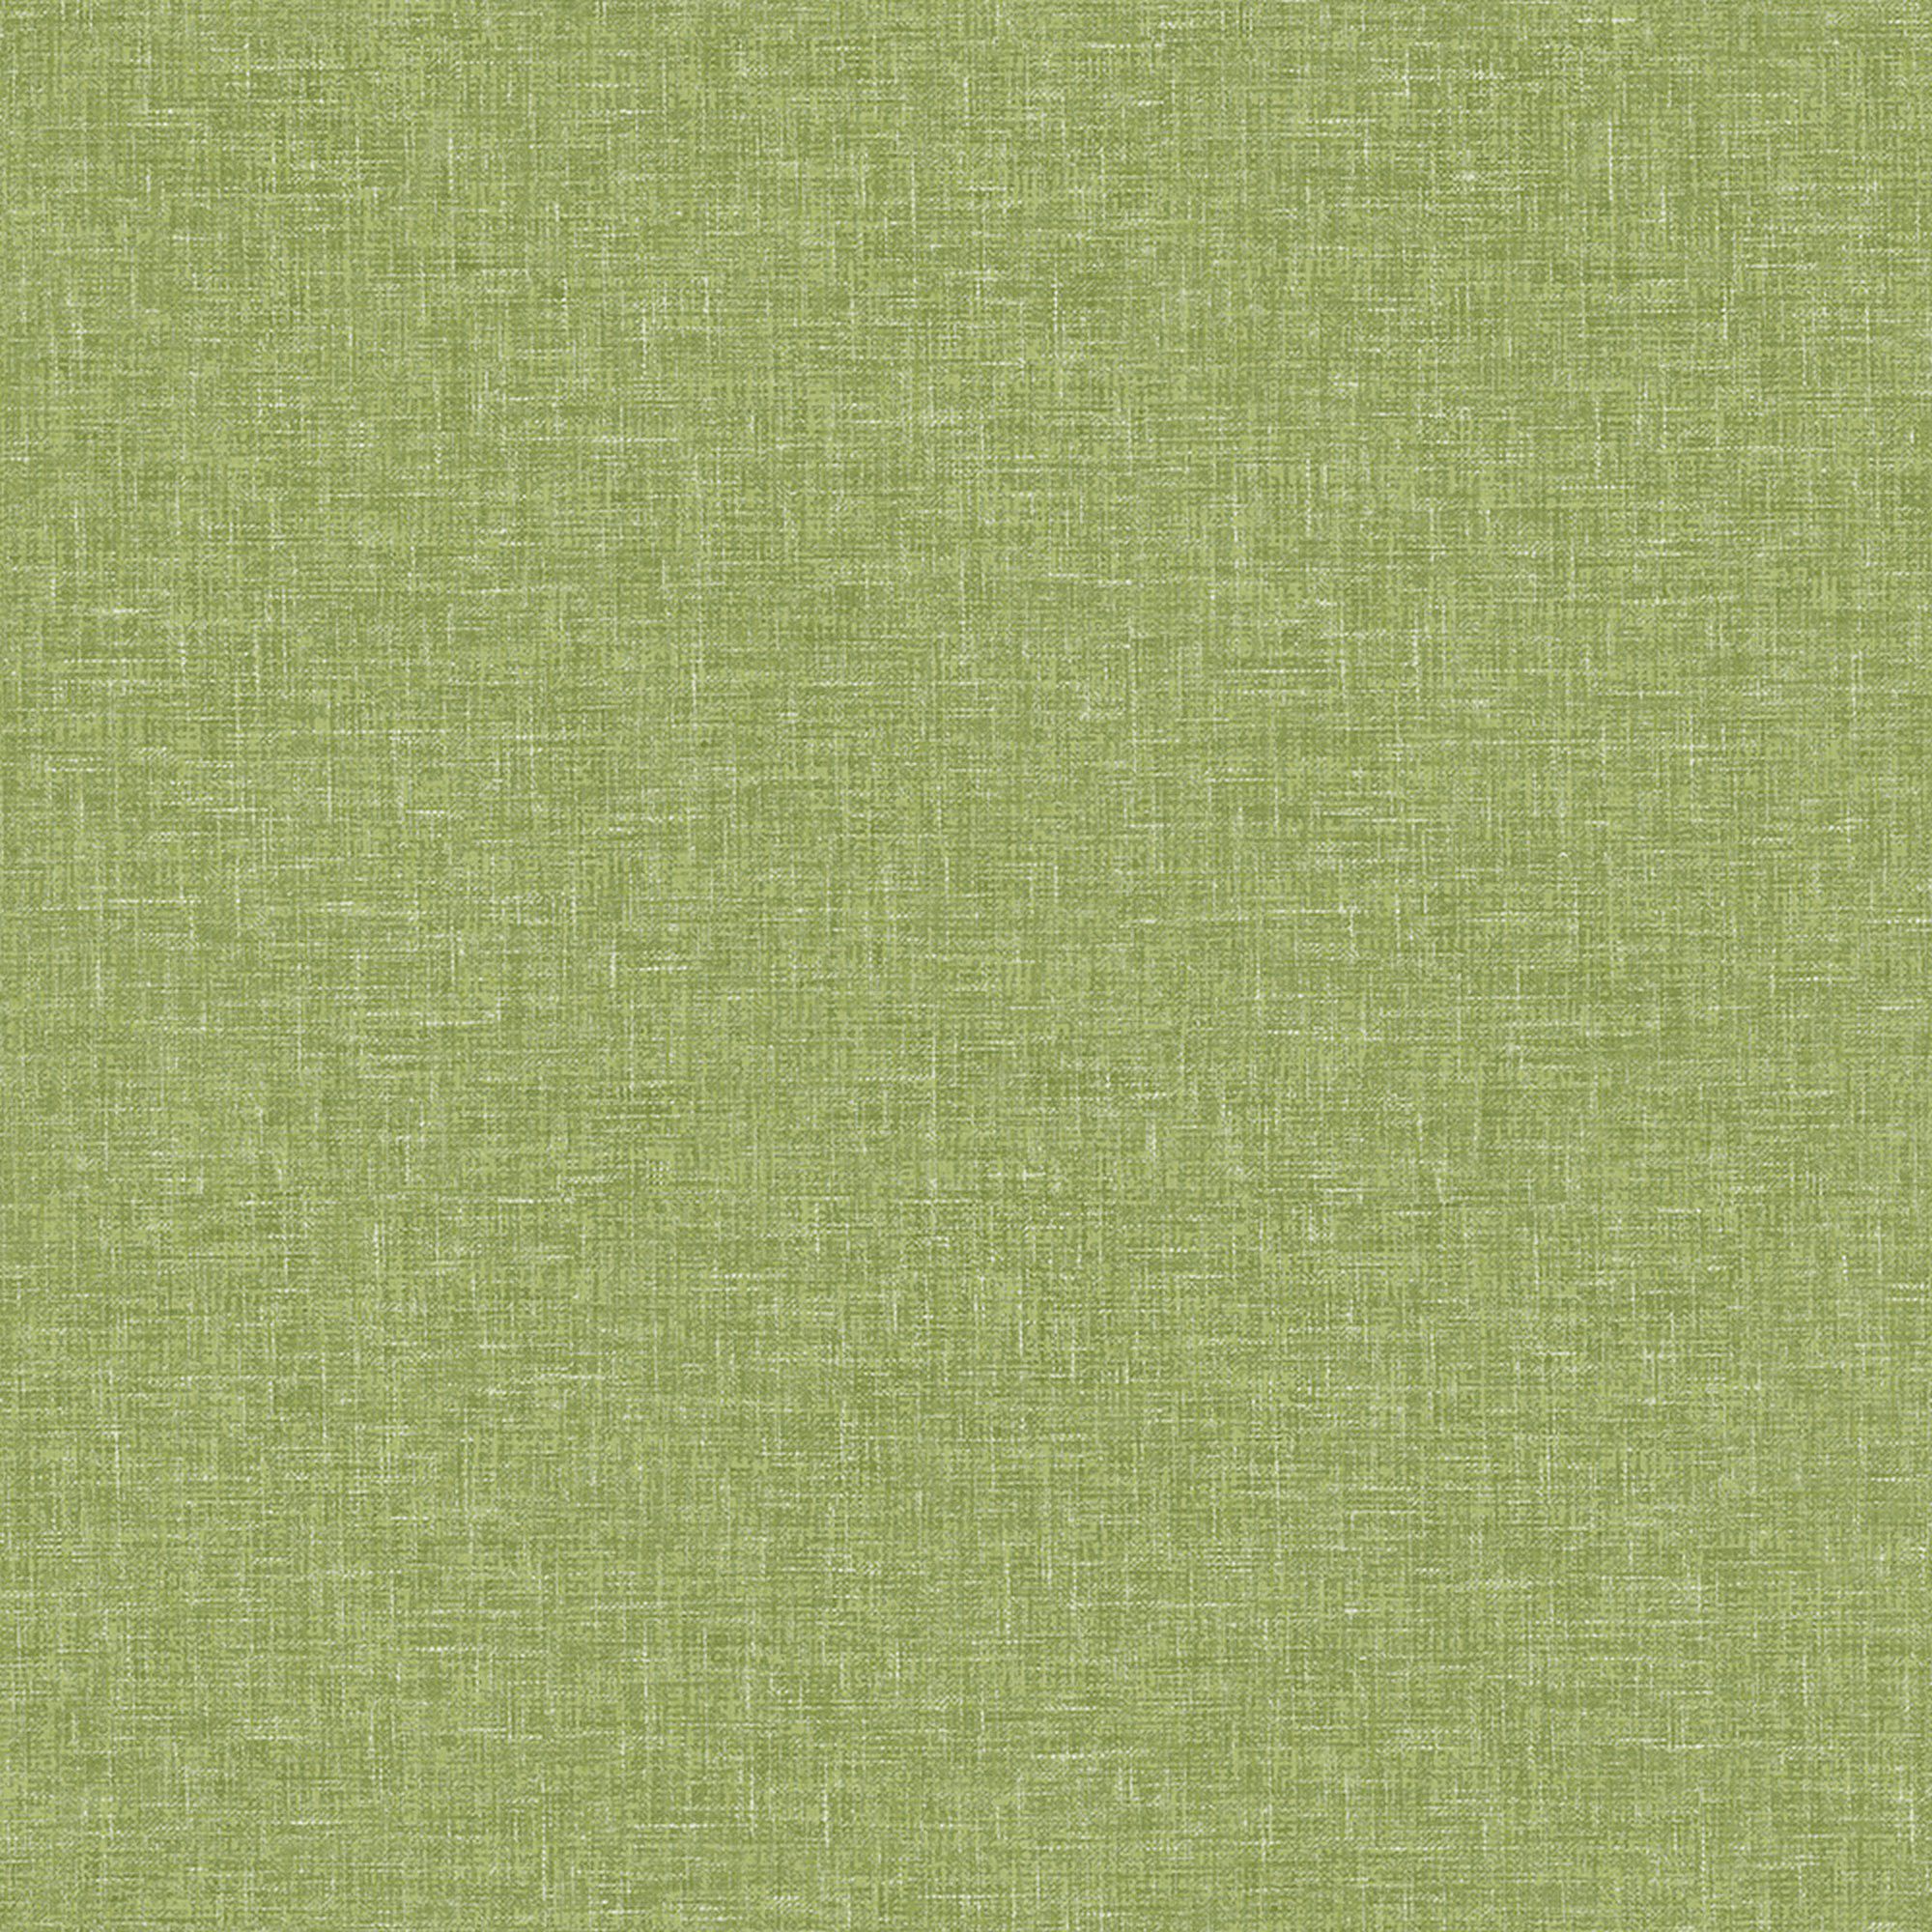 Arthouse Linen Texture Moss Green Wallpaper 10.05m x 53cm